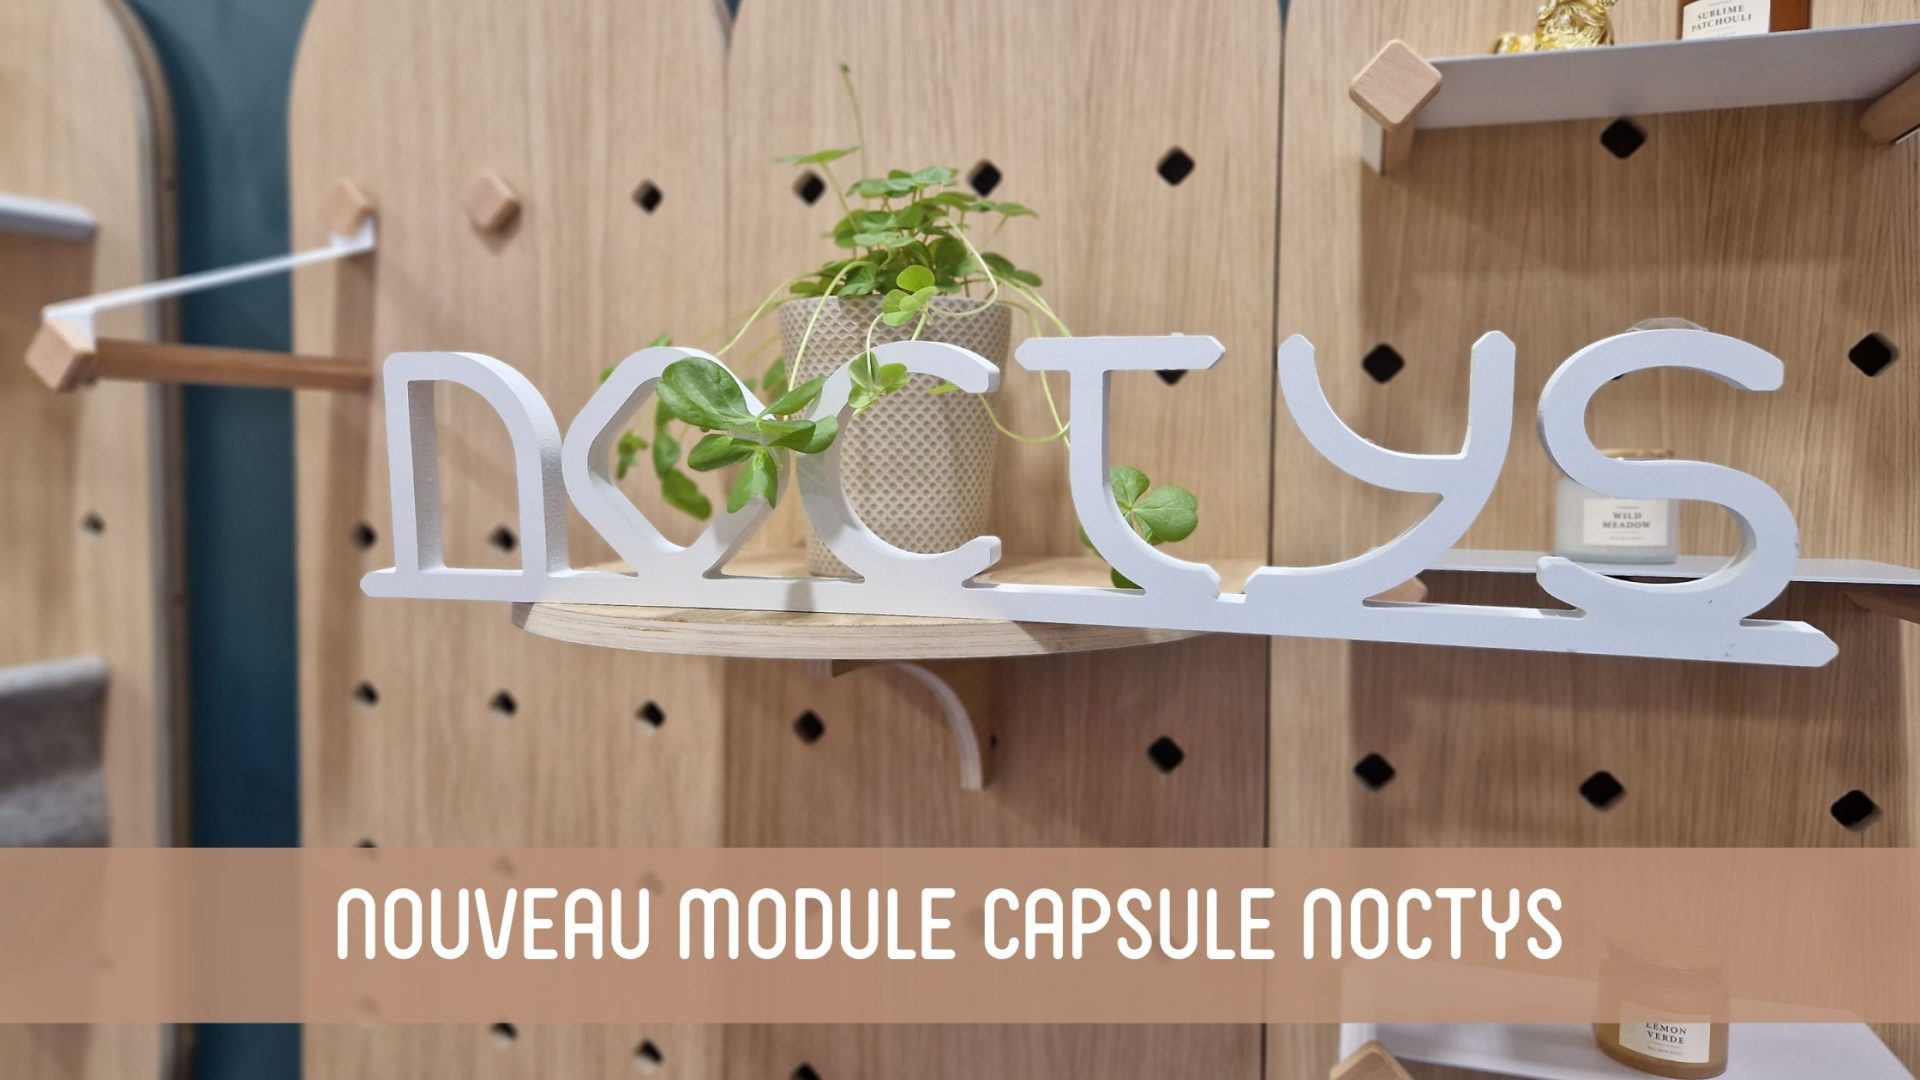 Nouveau module pegboard capsule Noctys